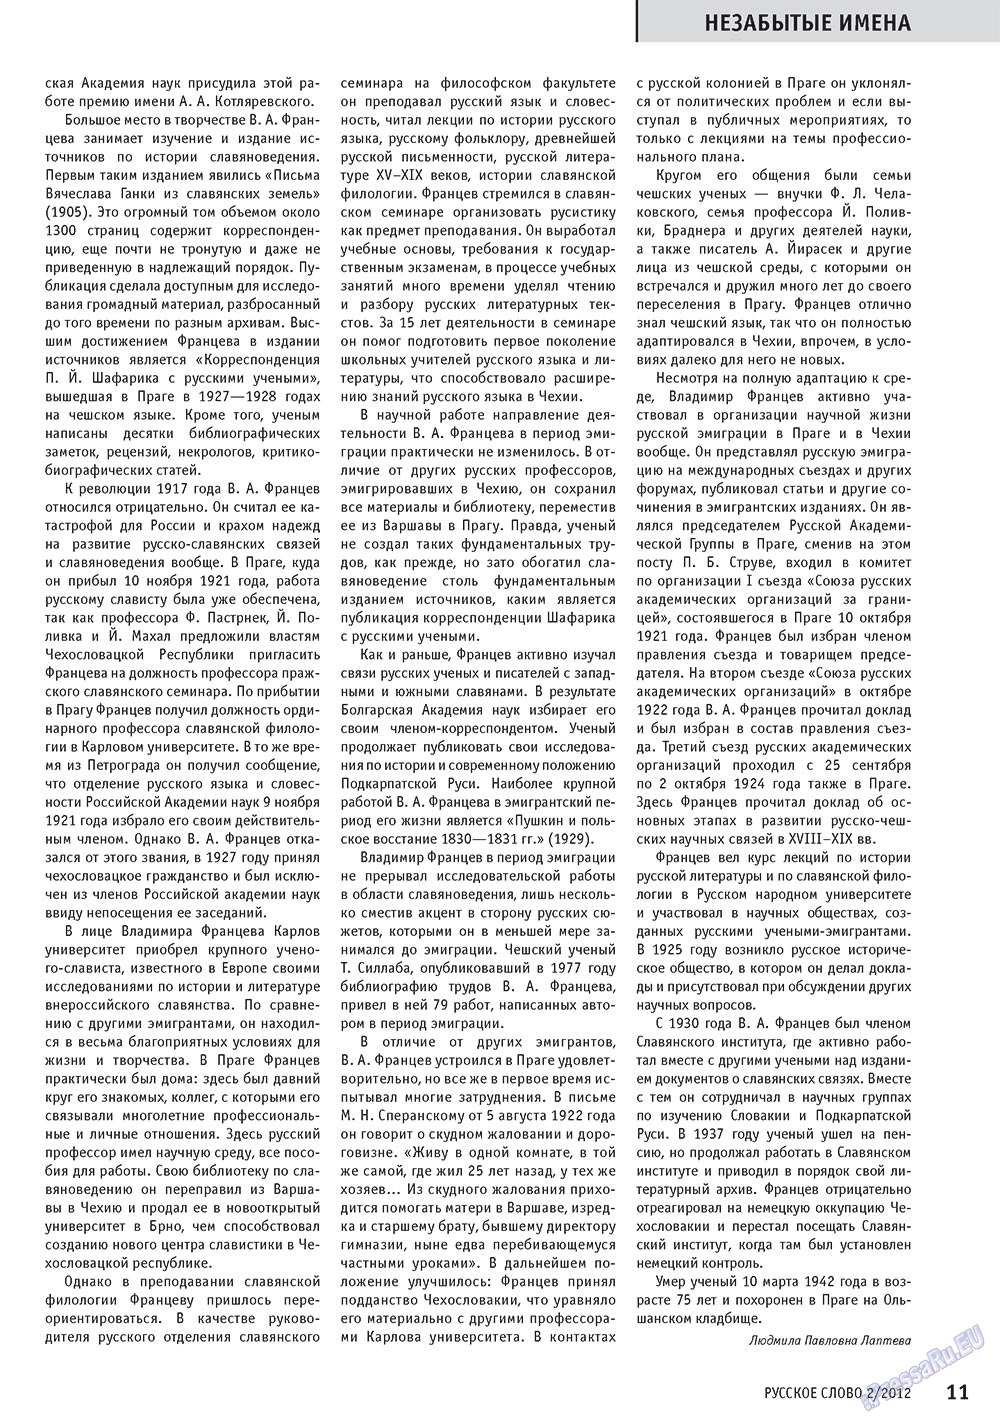 Русское слово, журнал. 2012 №2 стр.13